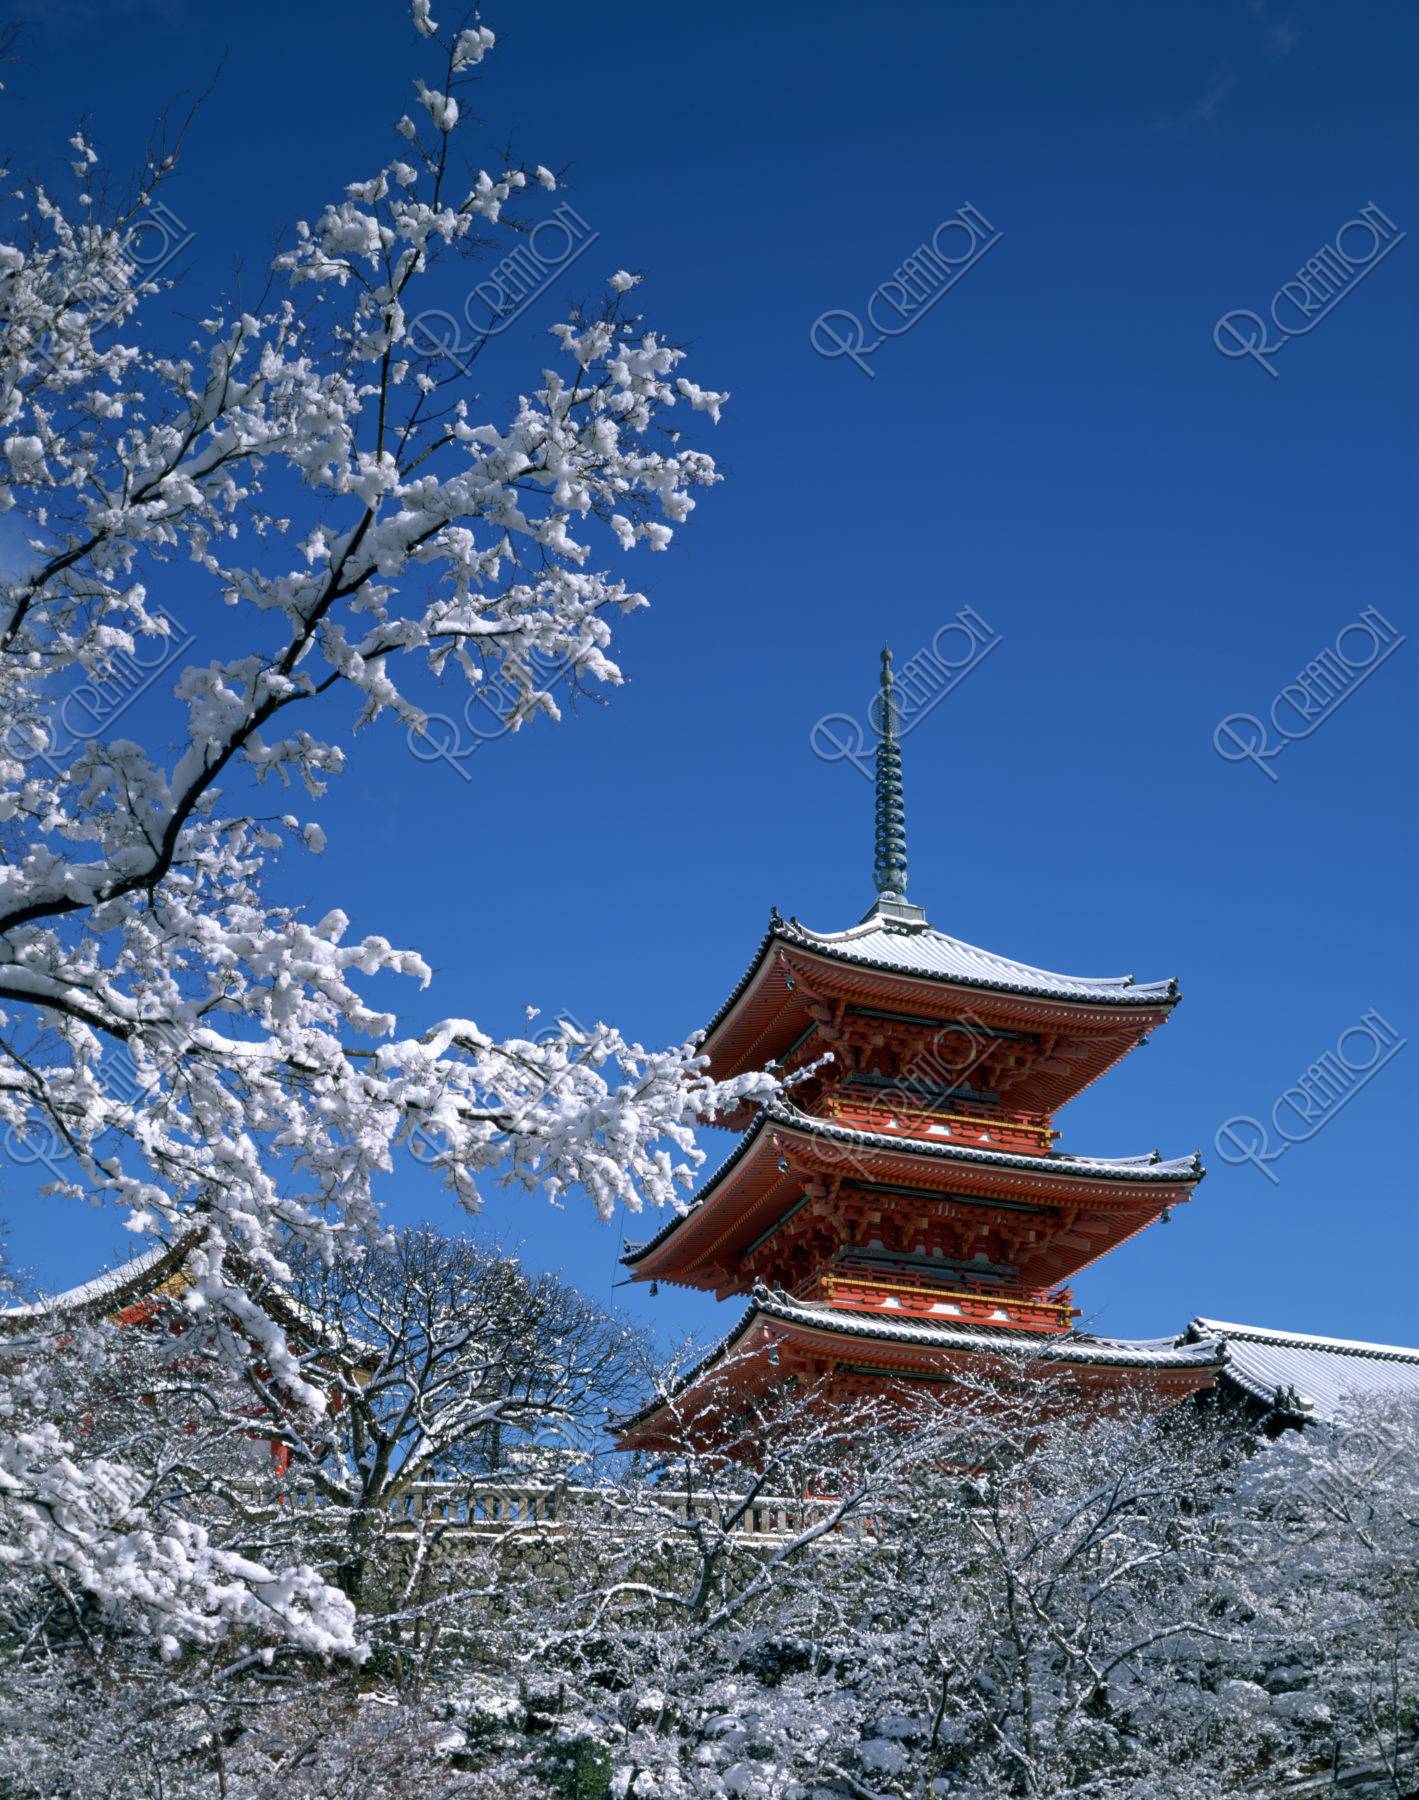 雪の清水寺三重塔